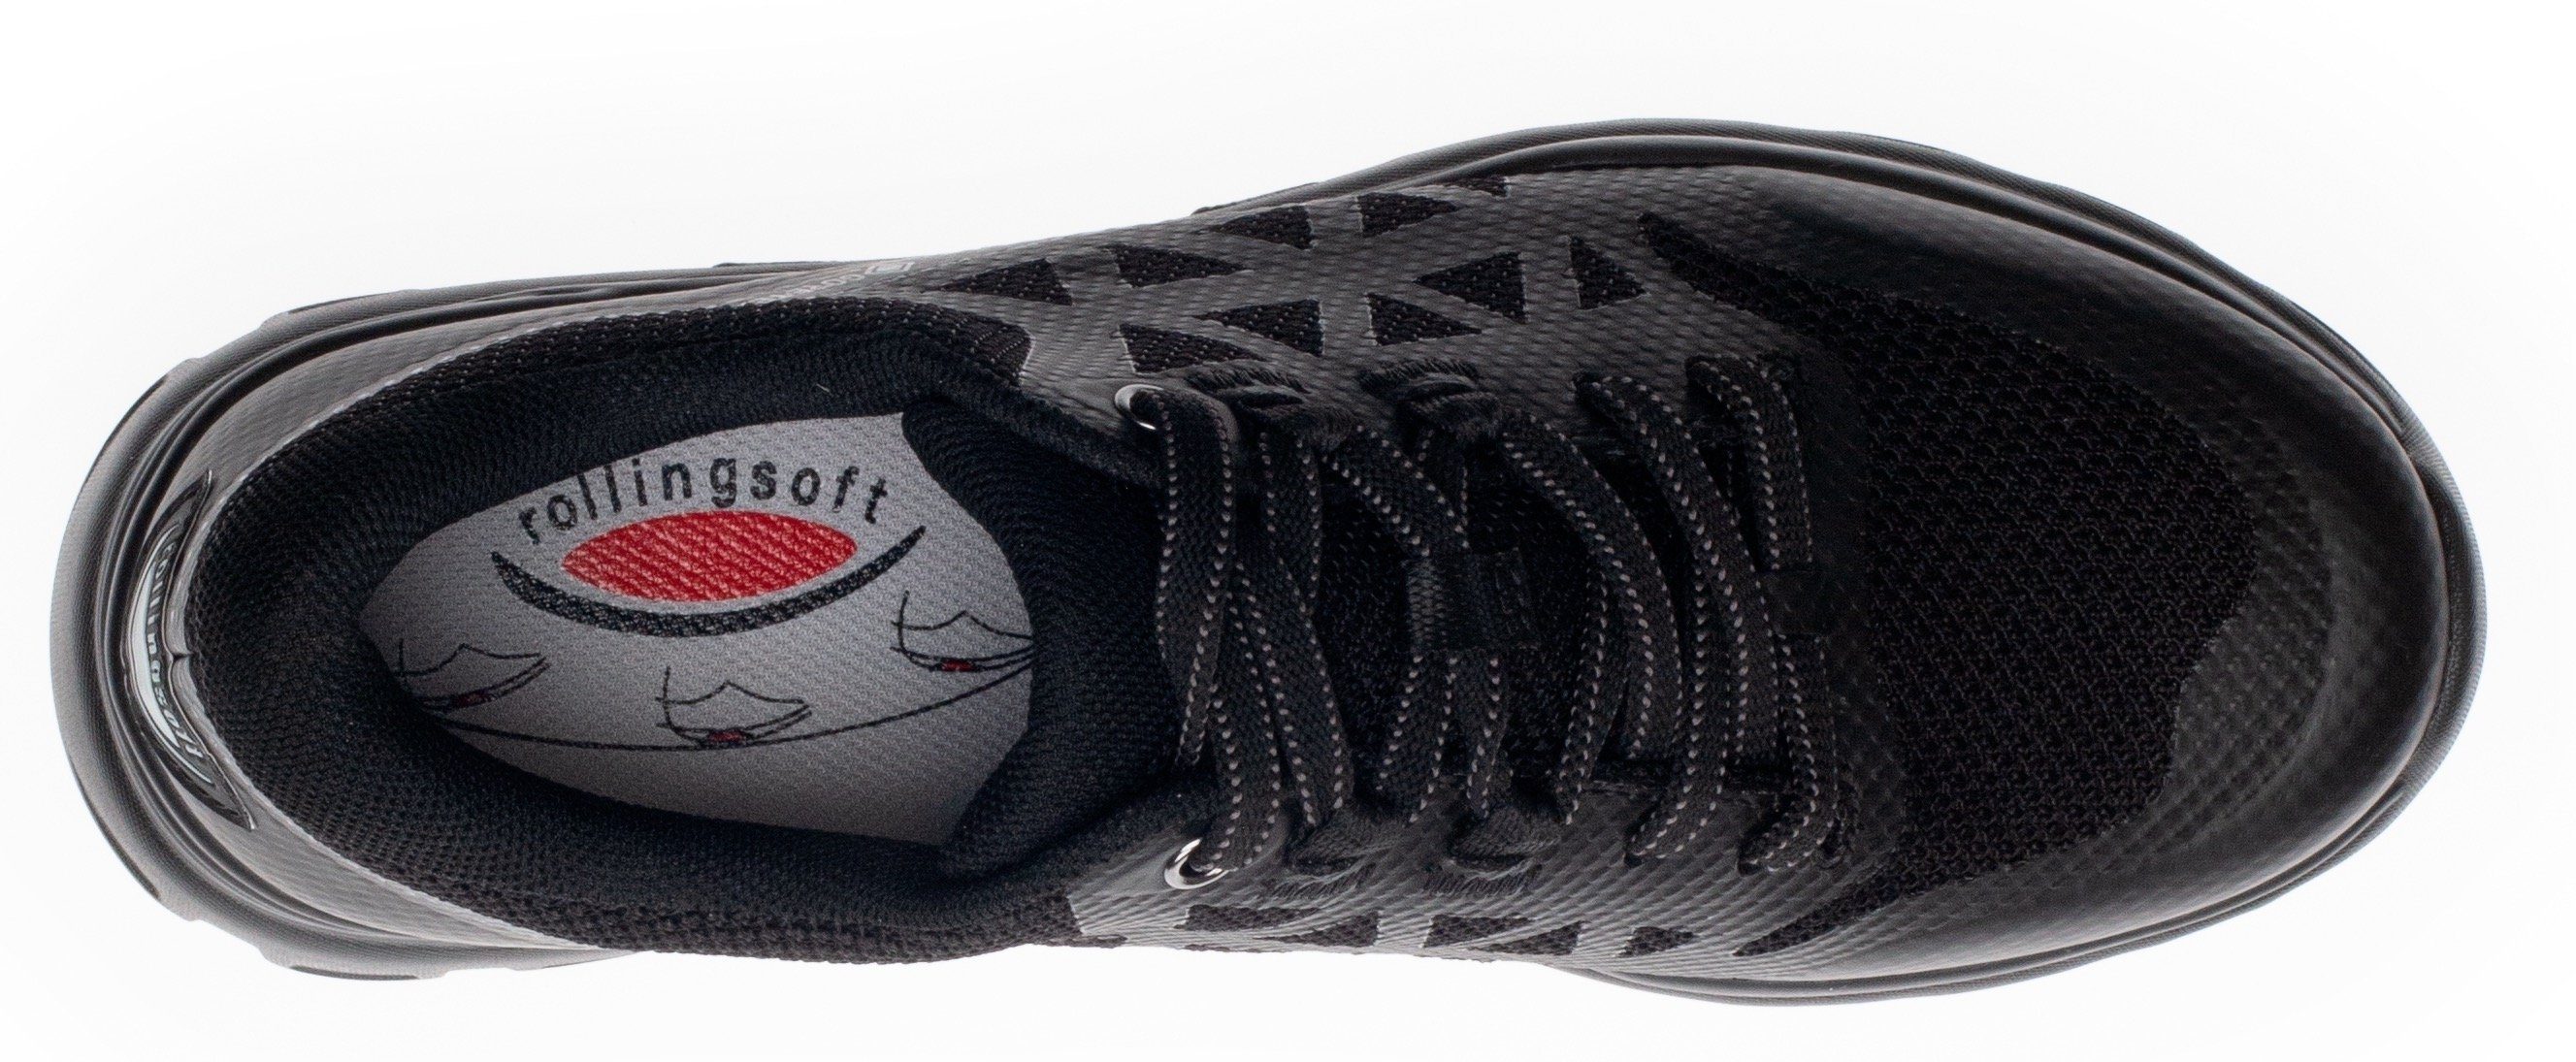 Rollingsoft schwarz GORE-TEX-Membran mit Keilsneaker Gabor